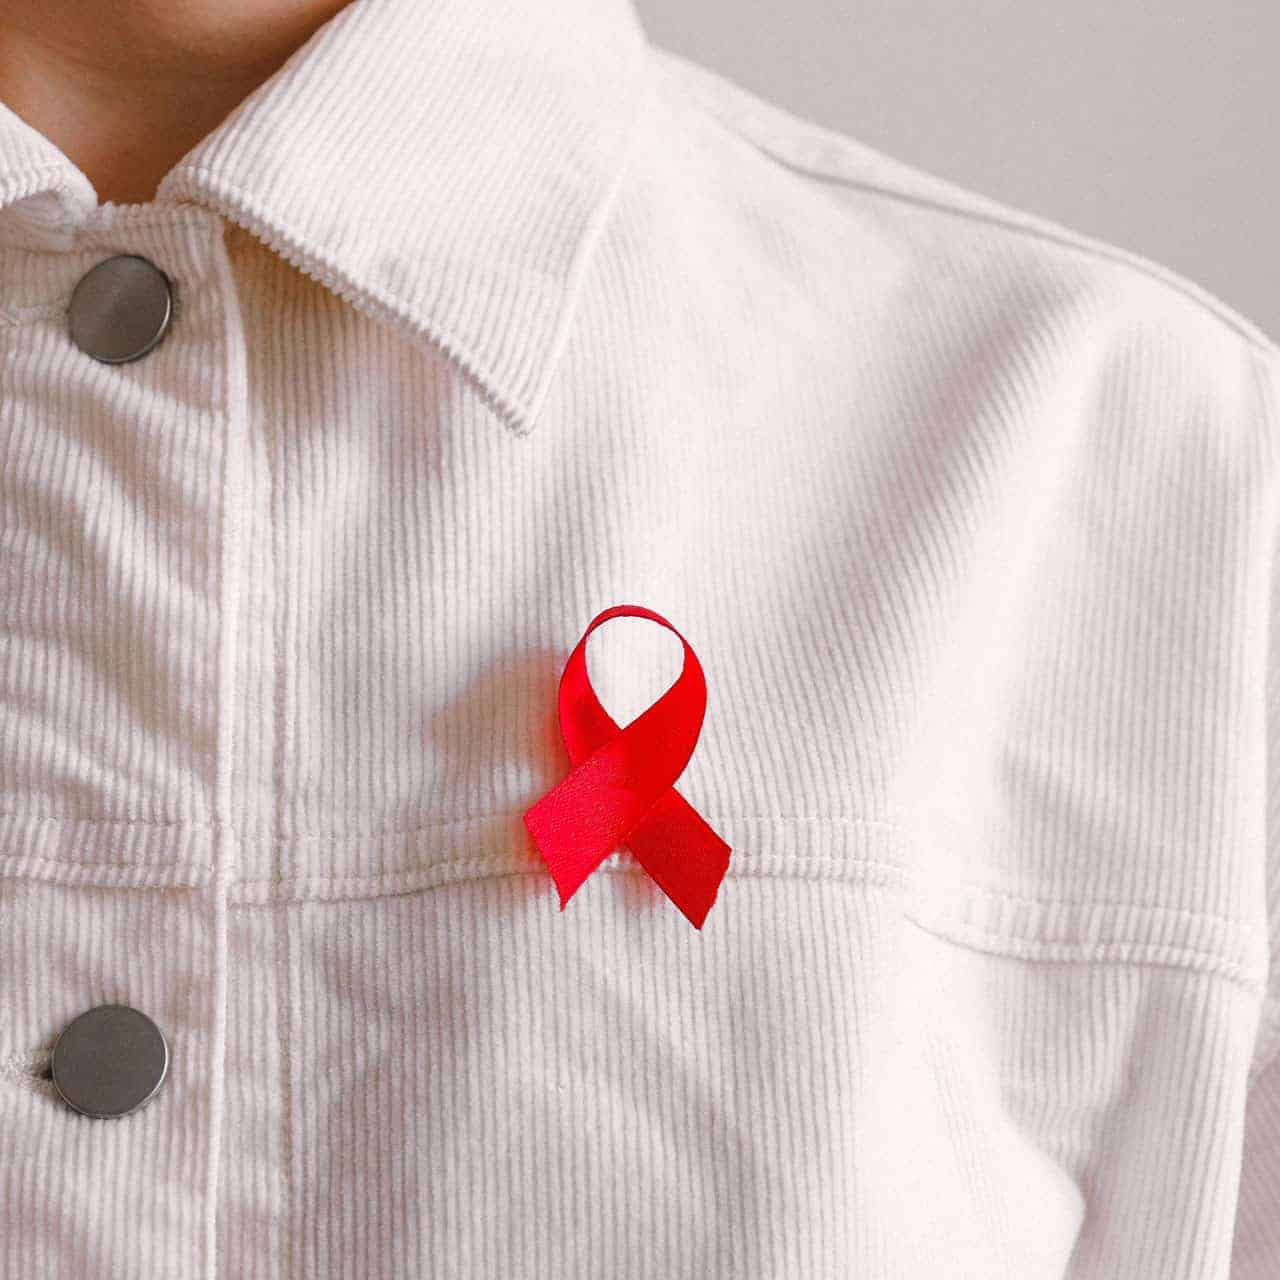 Der Welt-AIDS-Tag